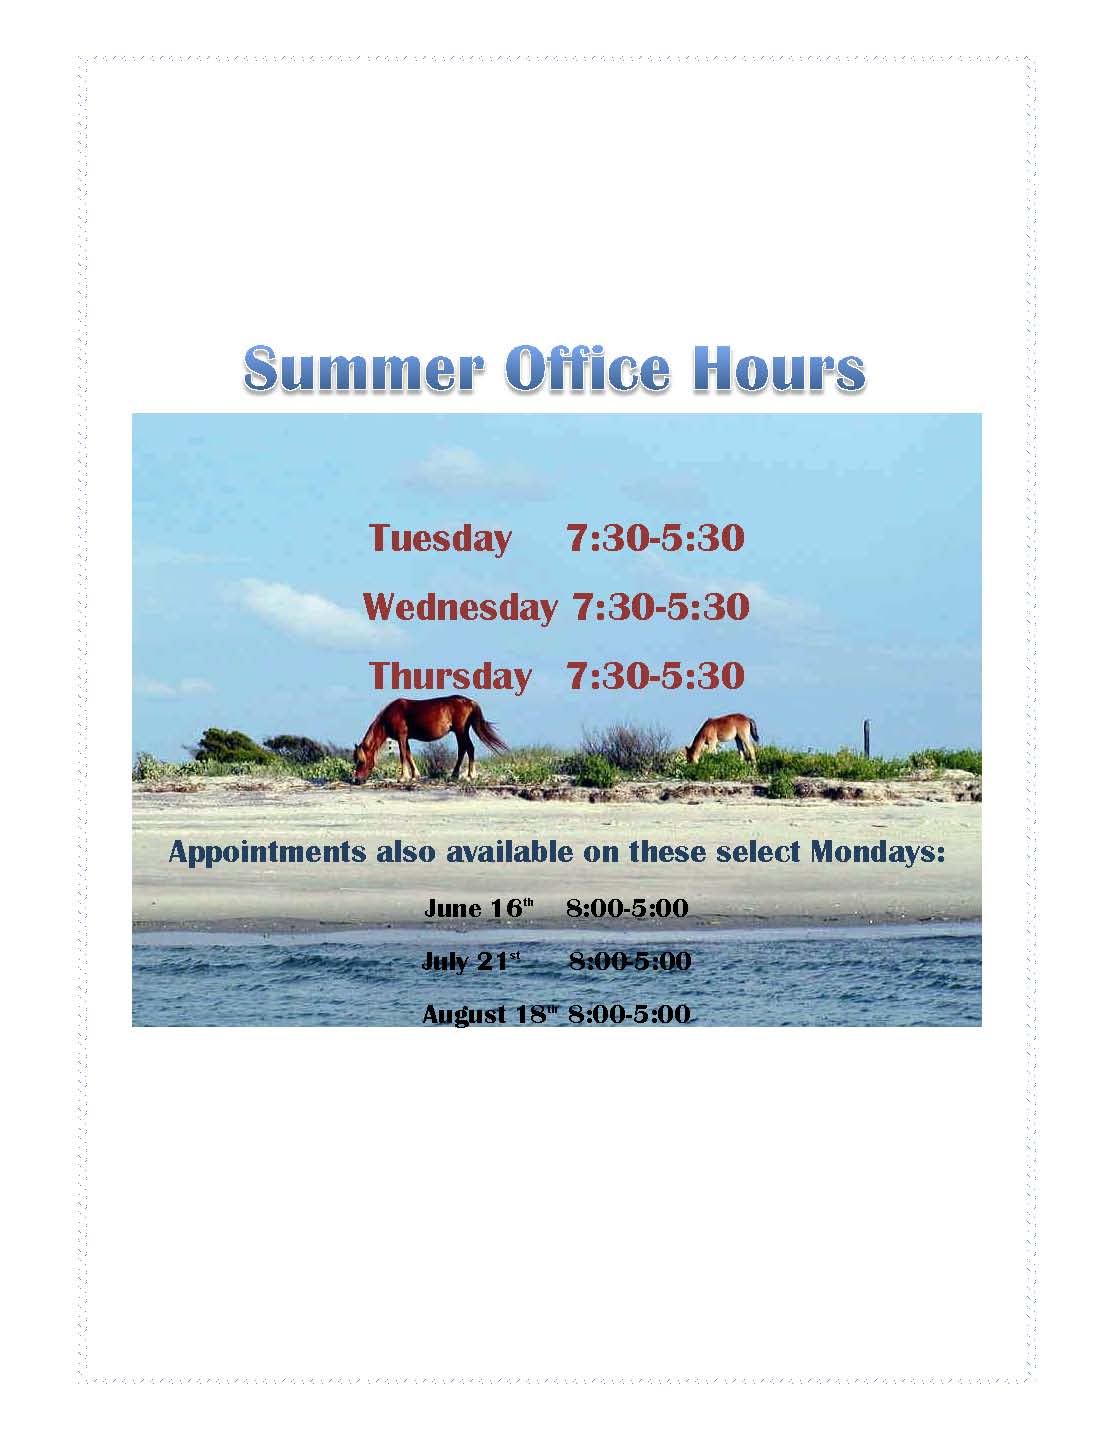 Summer Office Hoursbigger